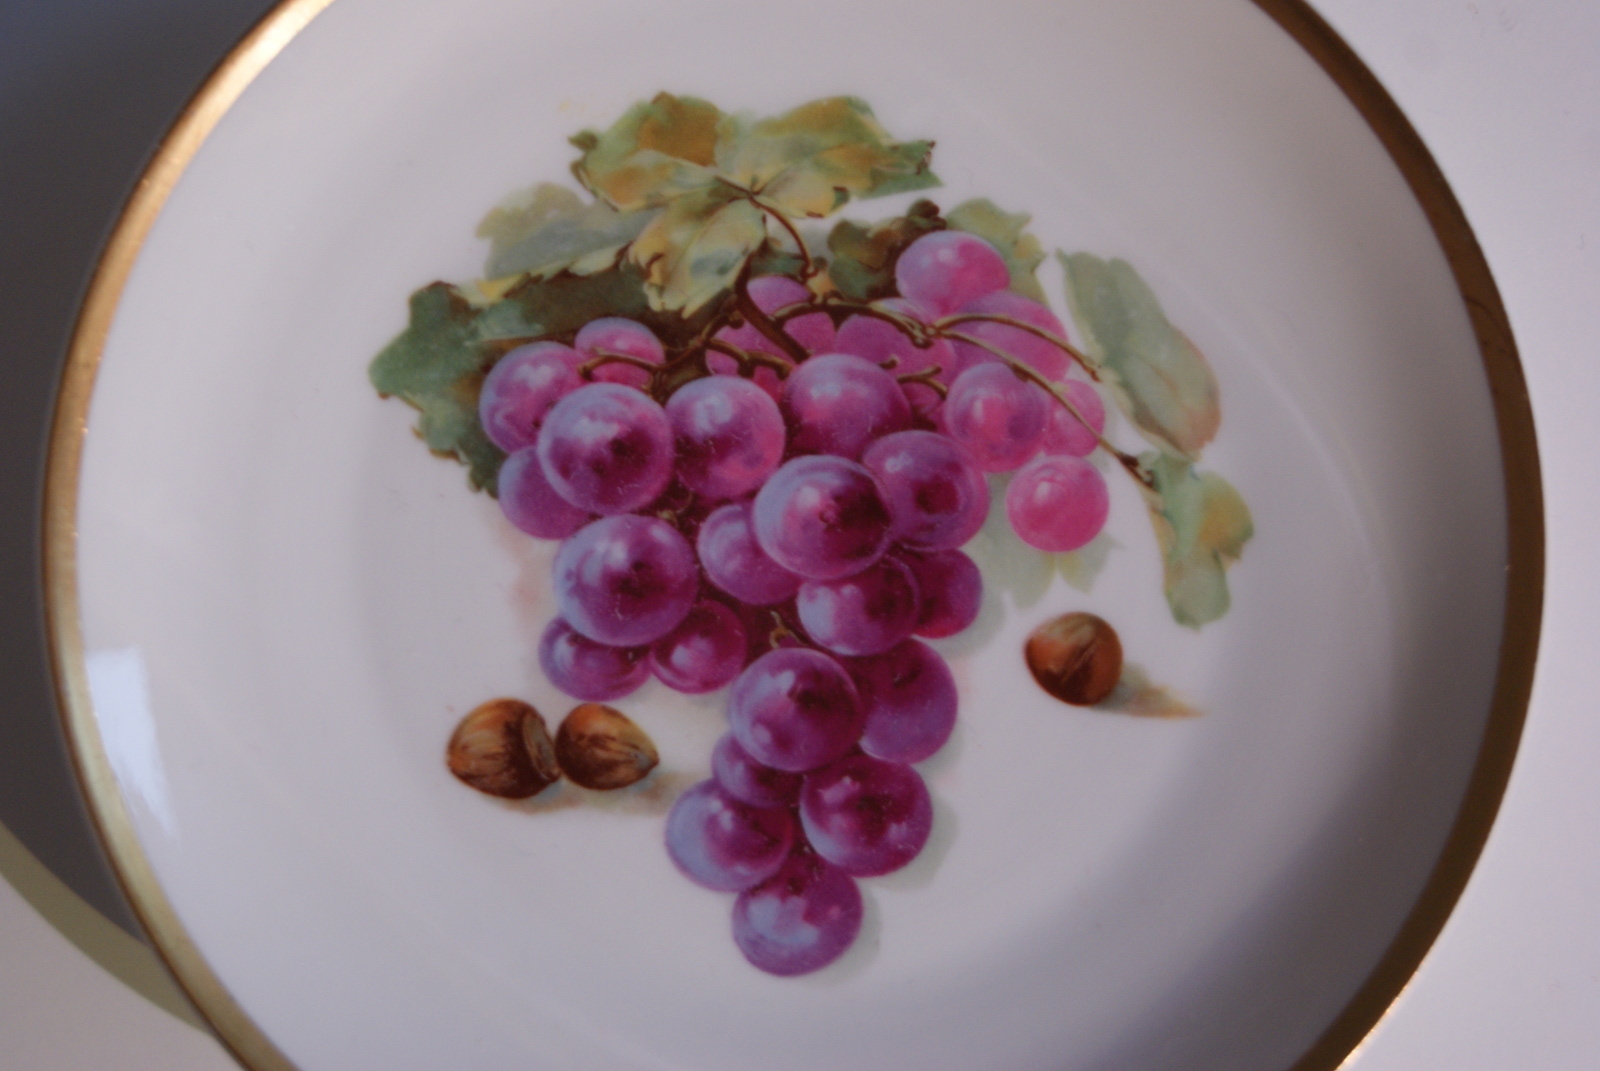 Waldenburg - Altwasser plate with pears and raisins 1929 - 1930